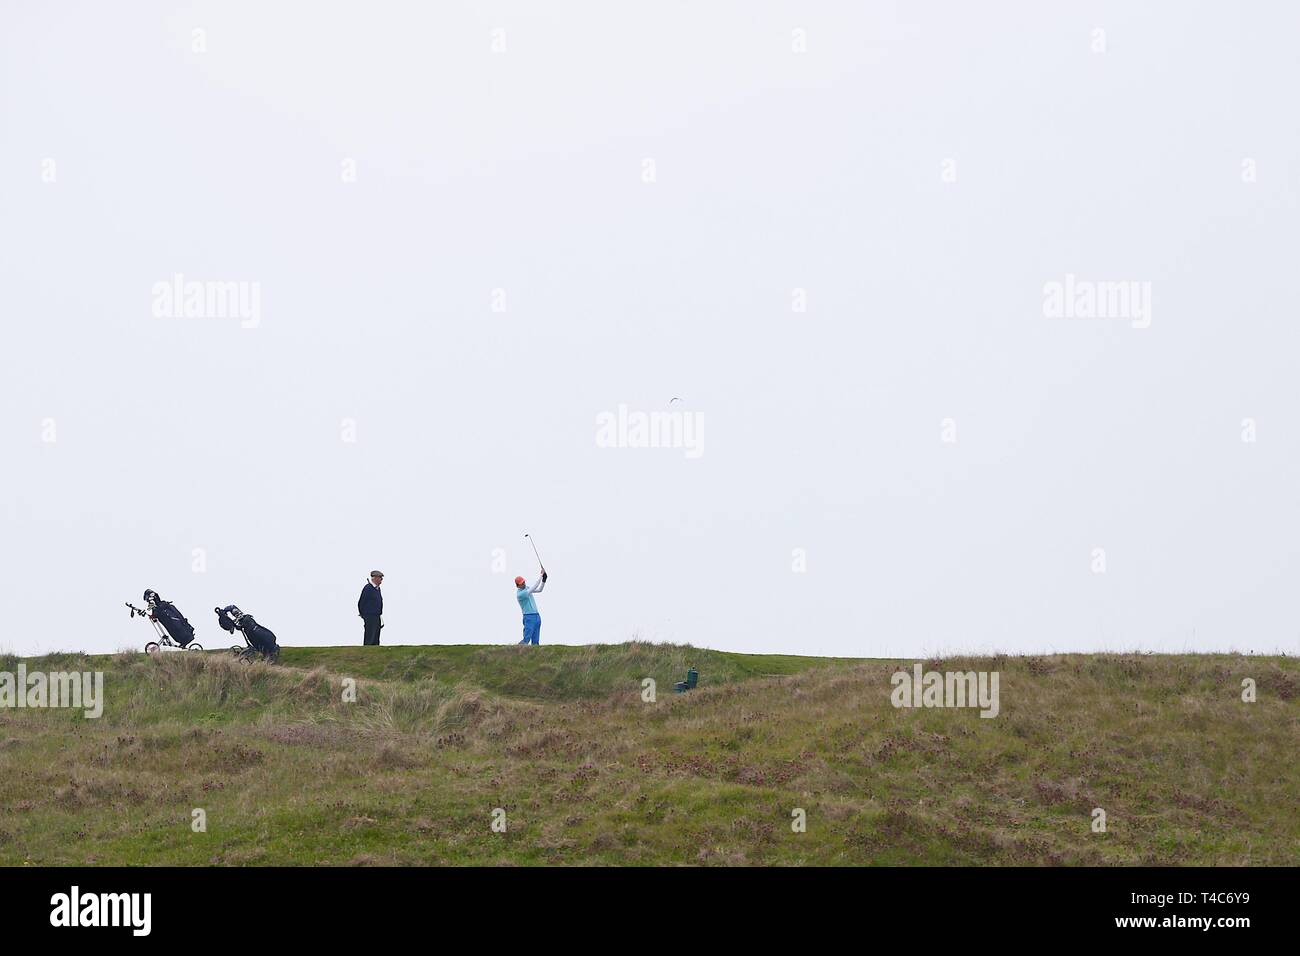 Le carrossage, East Sussex, UK. 15 avr 2019. Sur une chaude journée et brumeux à Camber Sands, les golfeurs jouent une partie de golf au club de golf de seigle, construit au-dessus des nombreuses dunes de sable le long de cette partie de la côte. ©PAUL Lawrenson, 2019 Crédit photo : Paul Lawrenson/Alamy Live News Banque D'Images